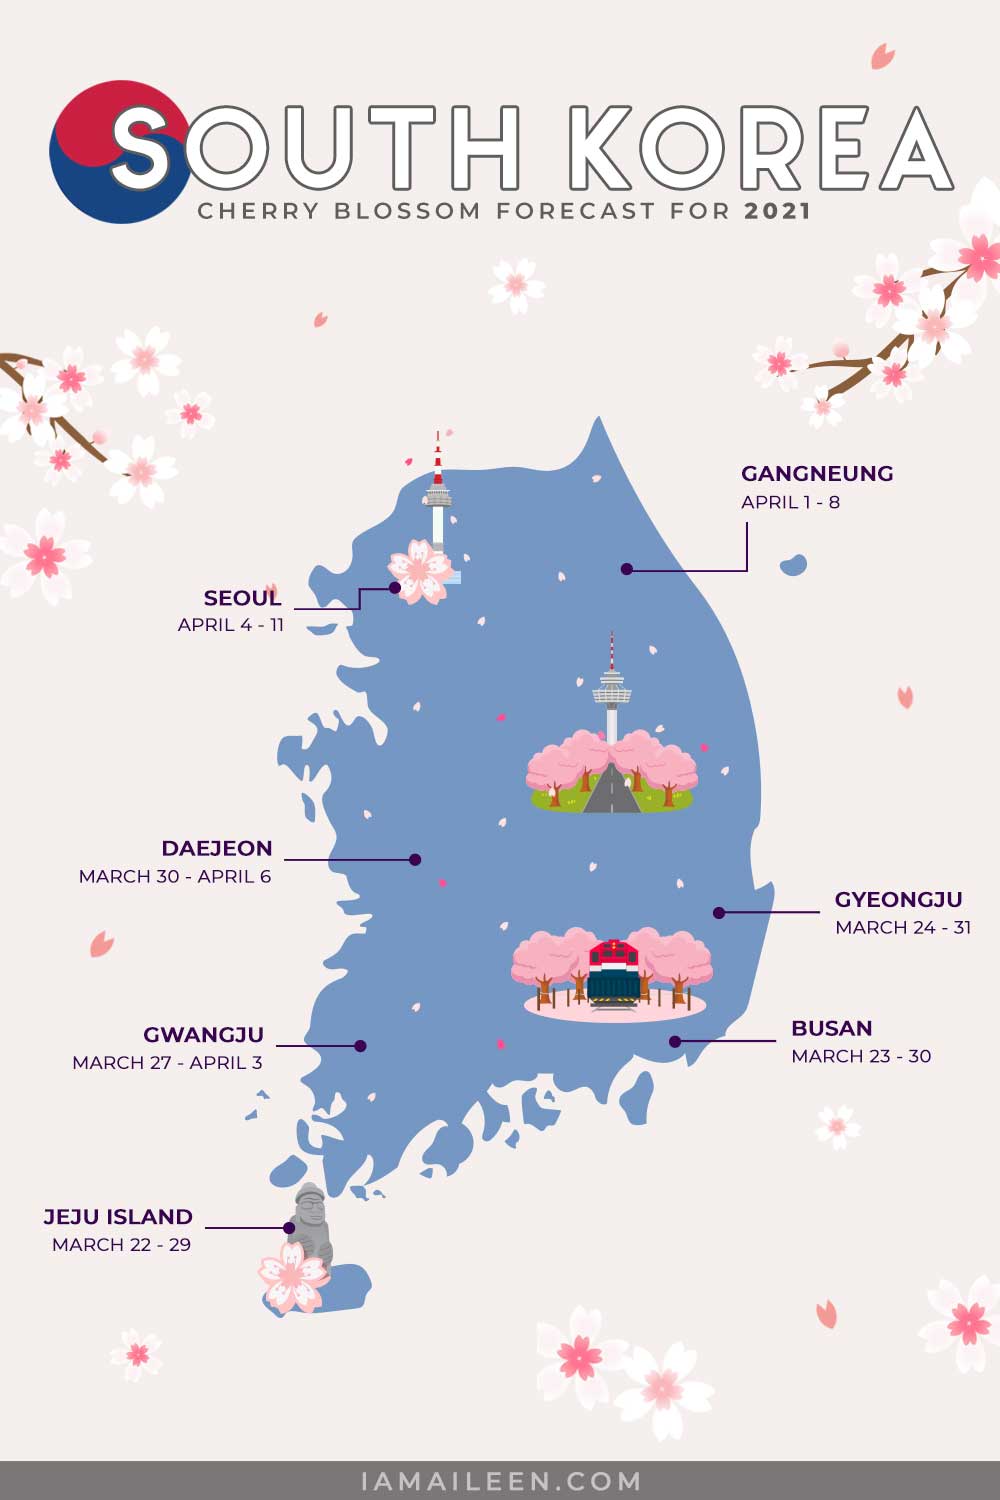 South Korea Cherry Blossom Forecast 2021